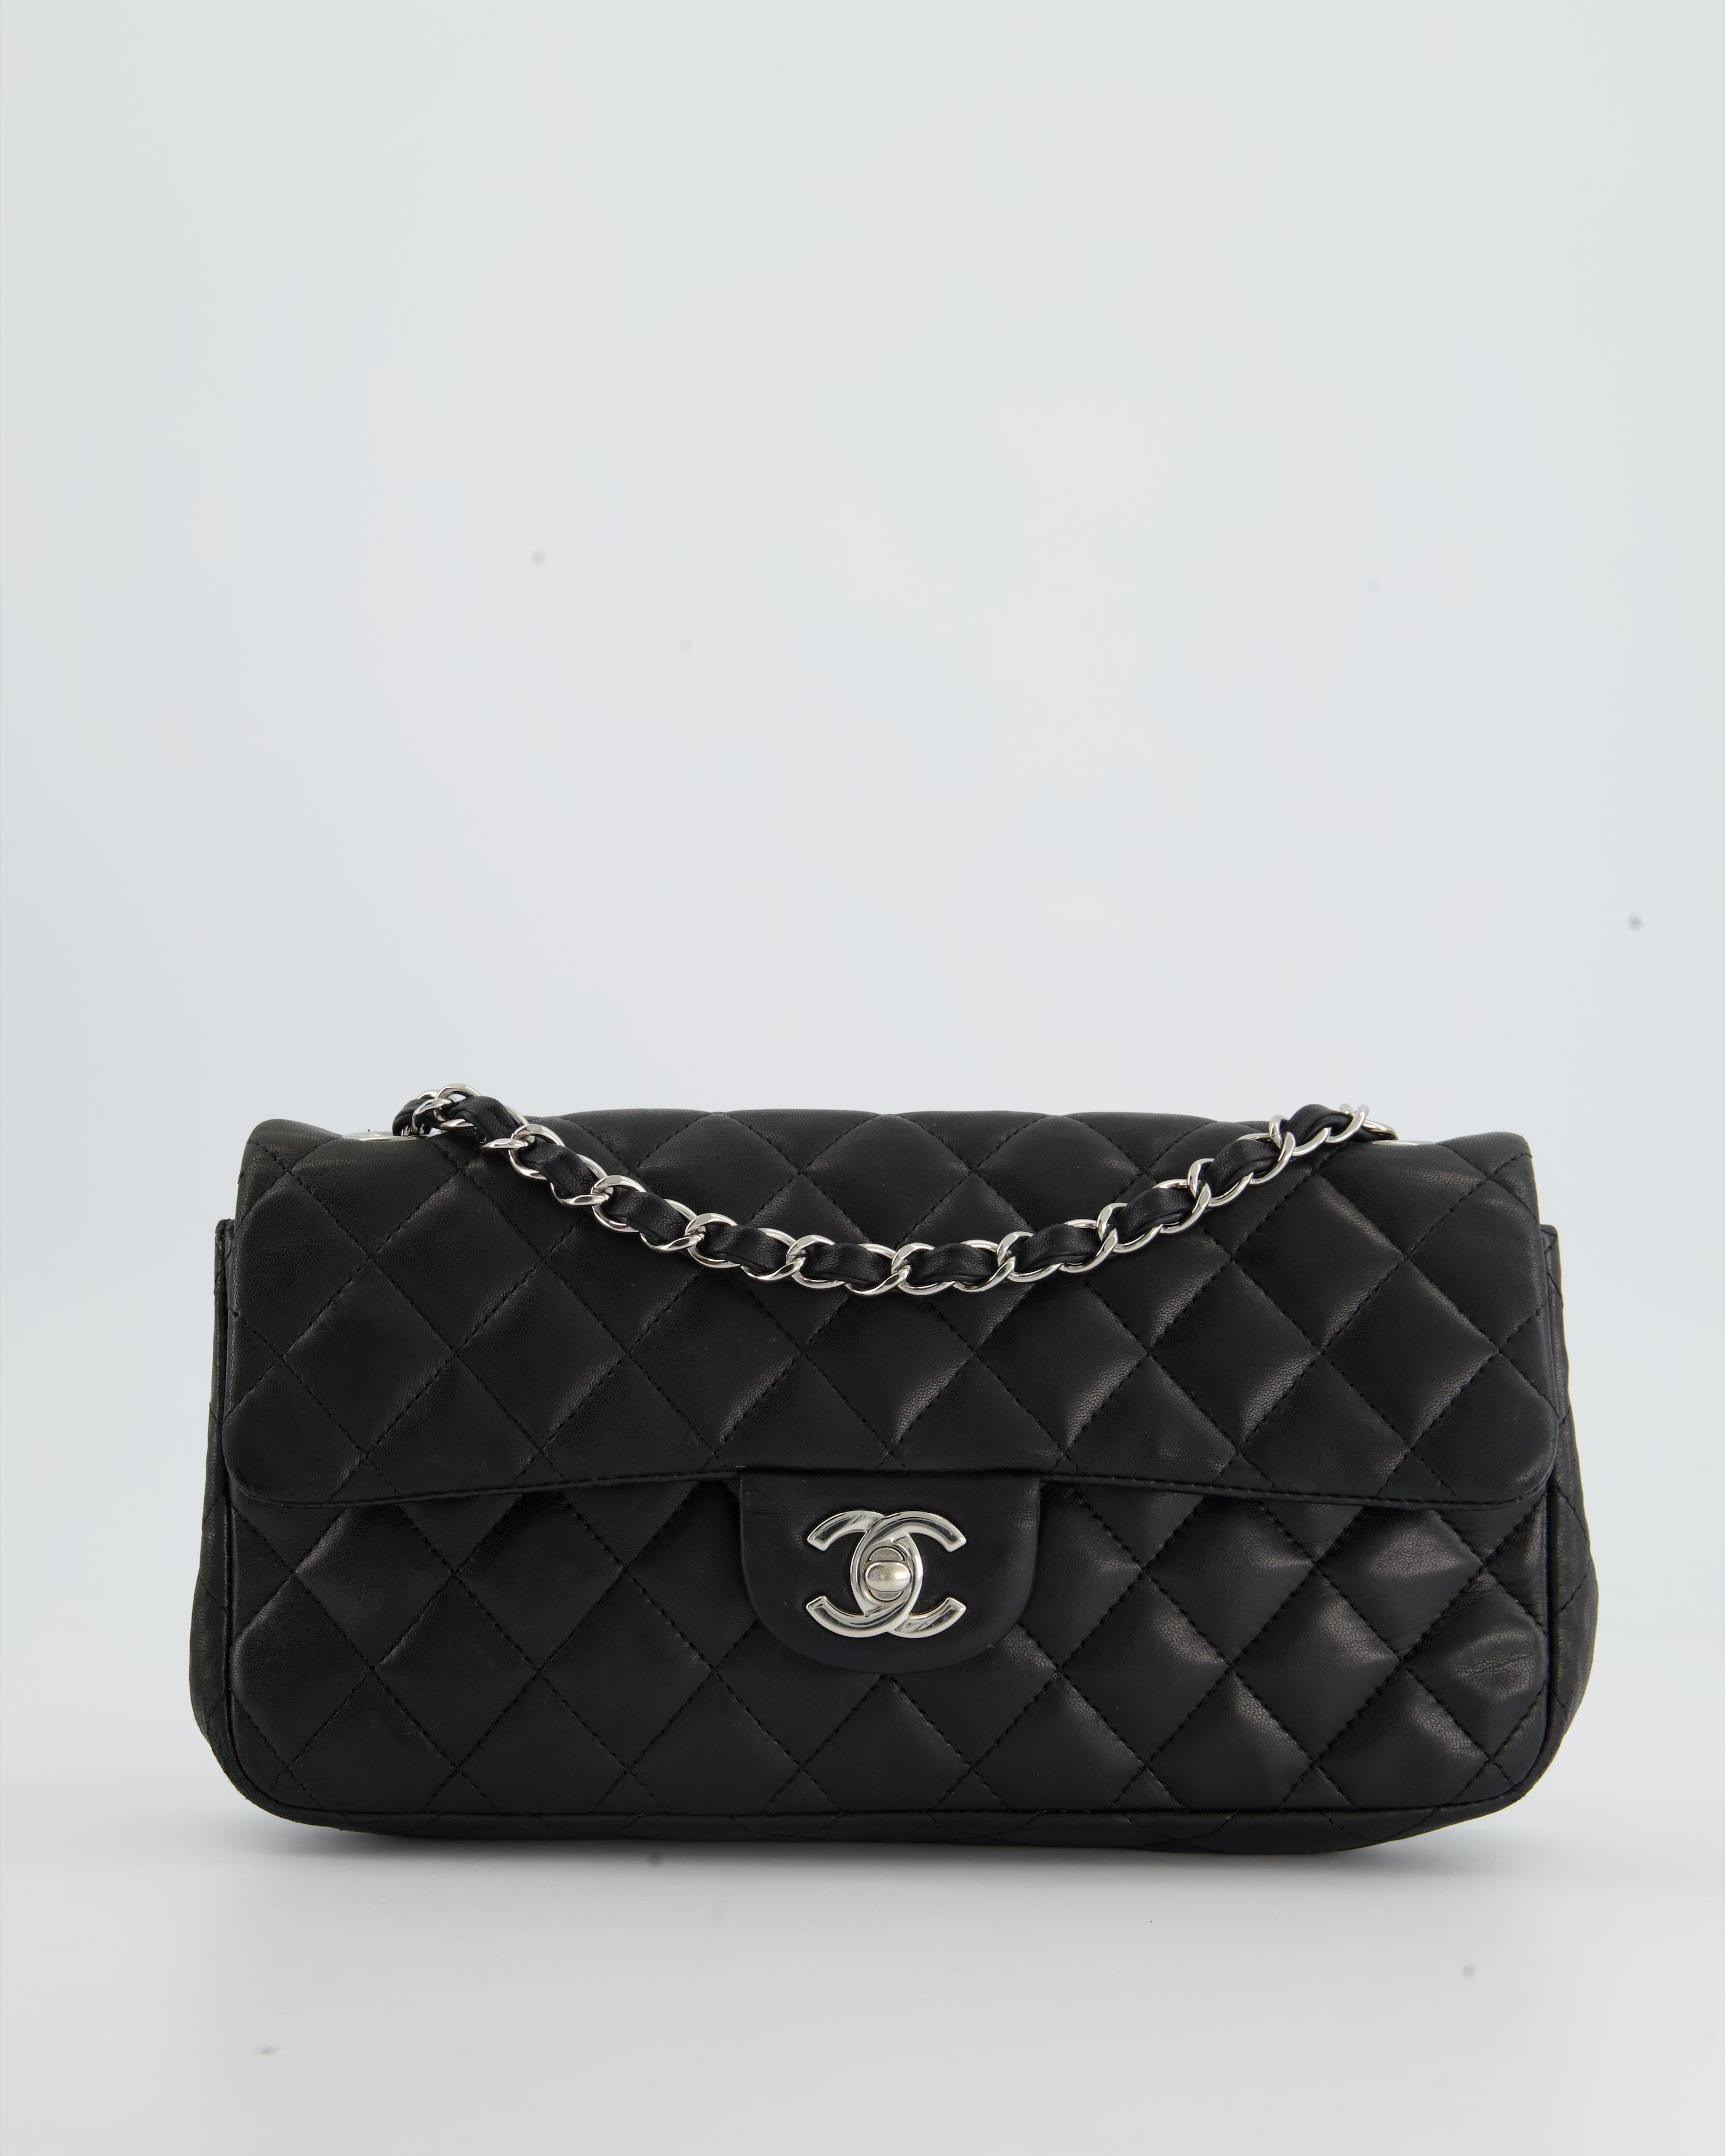 Chanel 12077632 Black Lambskin East West Flap Bag in Silver